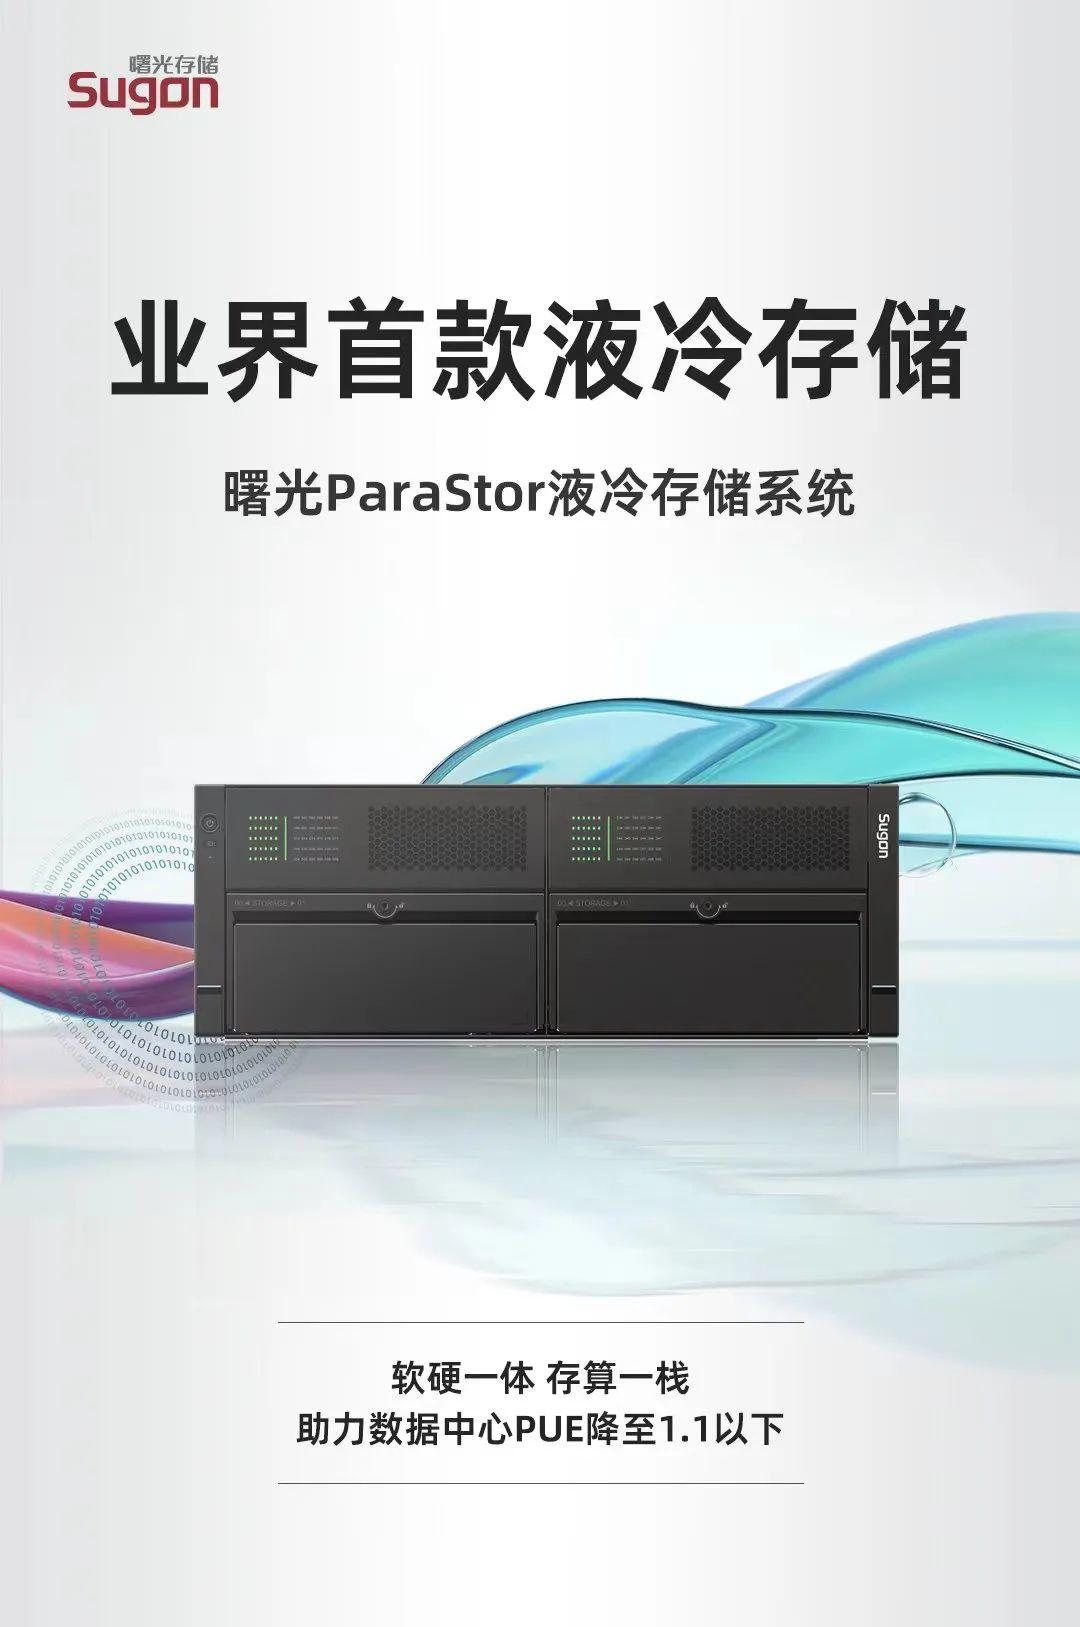 中科曙光发布首款 ParaStor 液冷存储系统